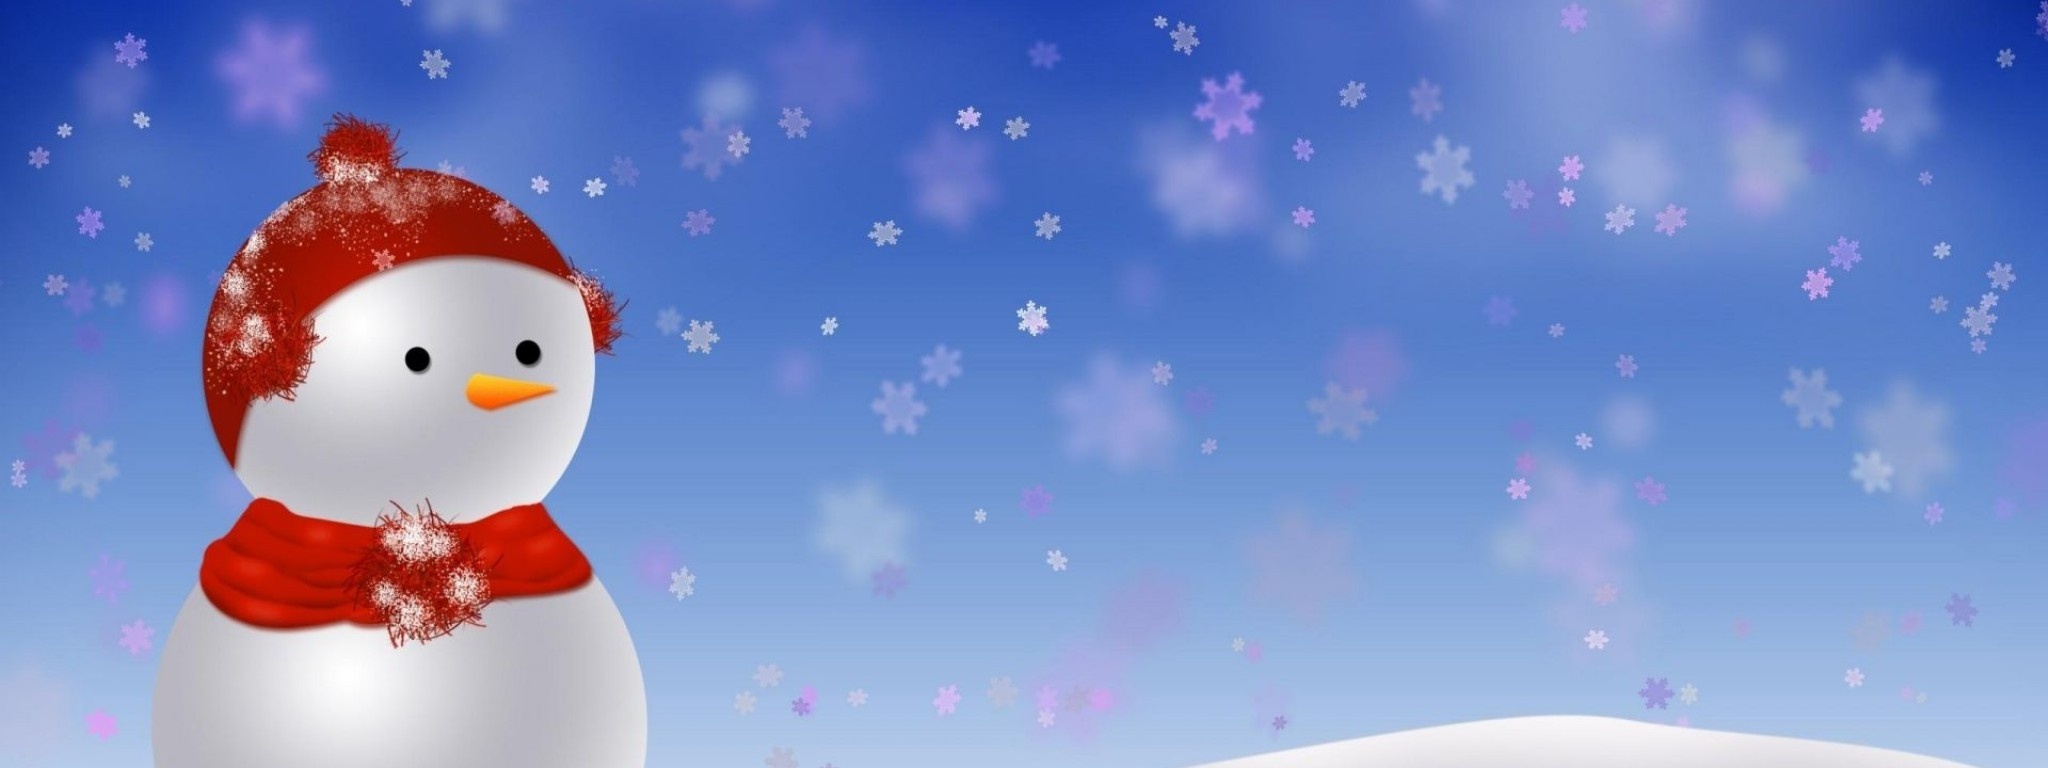 Snowman Snowdrift Snow Snowflakes